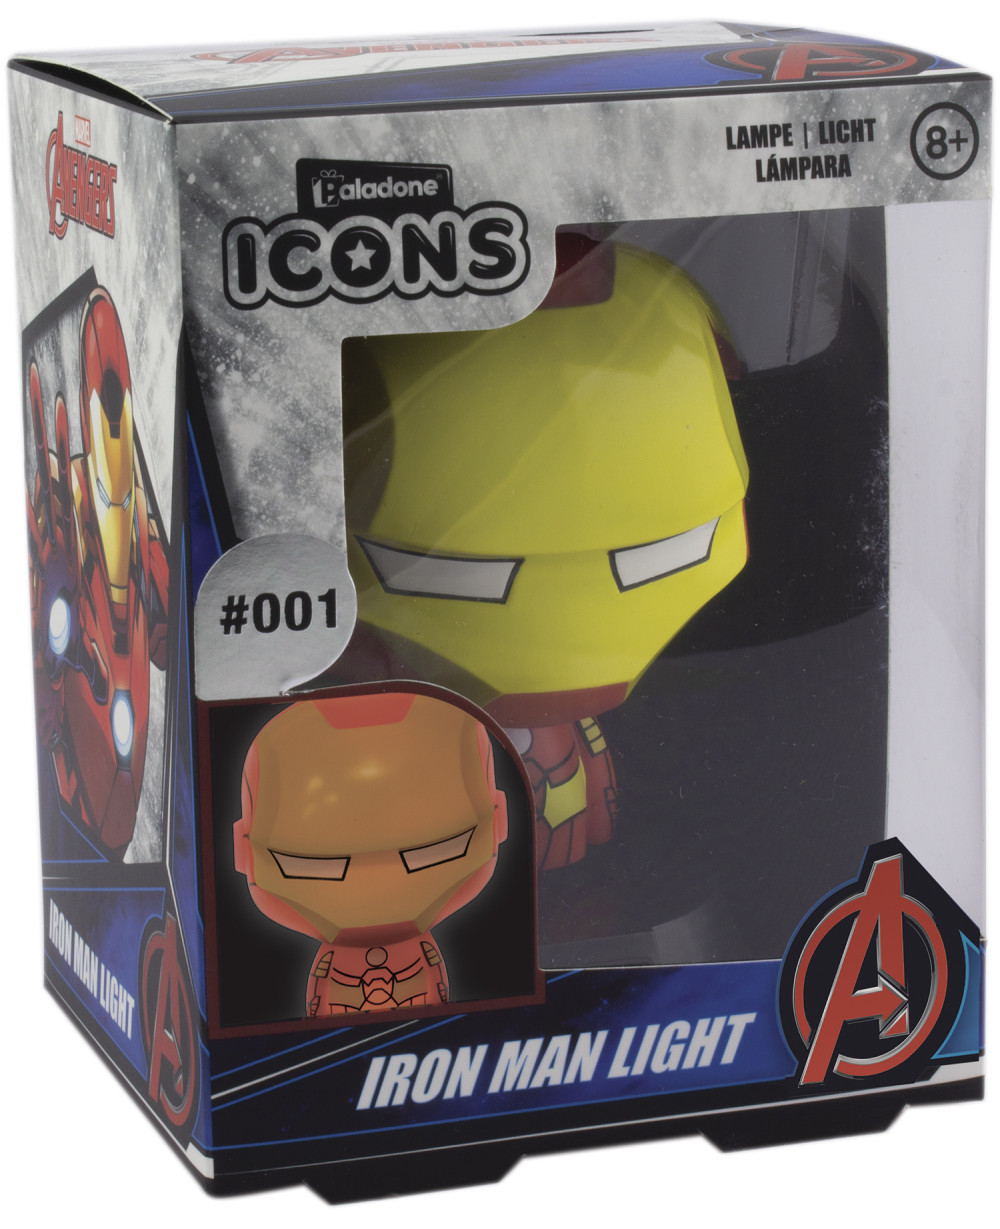  Iron Man Icons